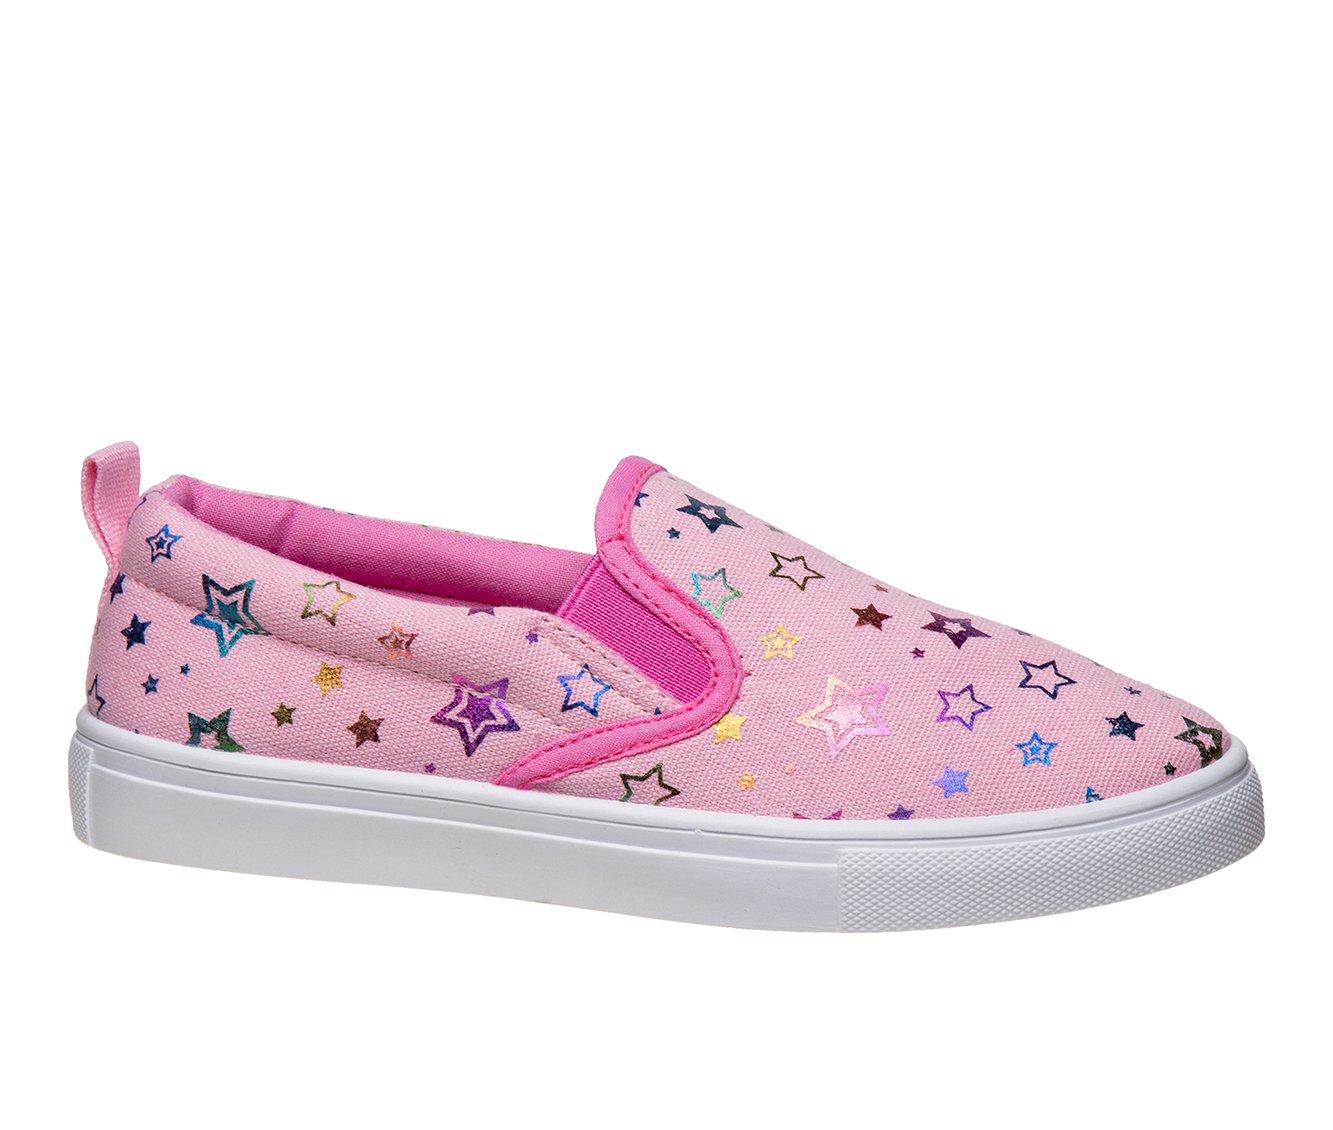 Girls' Nanette Lepore Little Kid & Big Kid Slip-On Canvas Sneakers